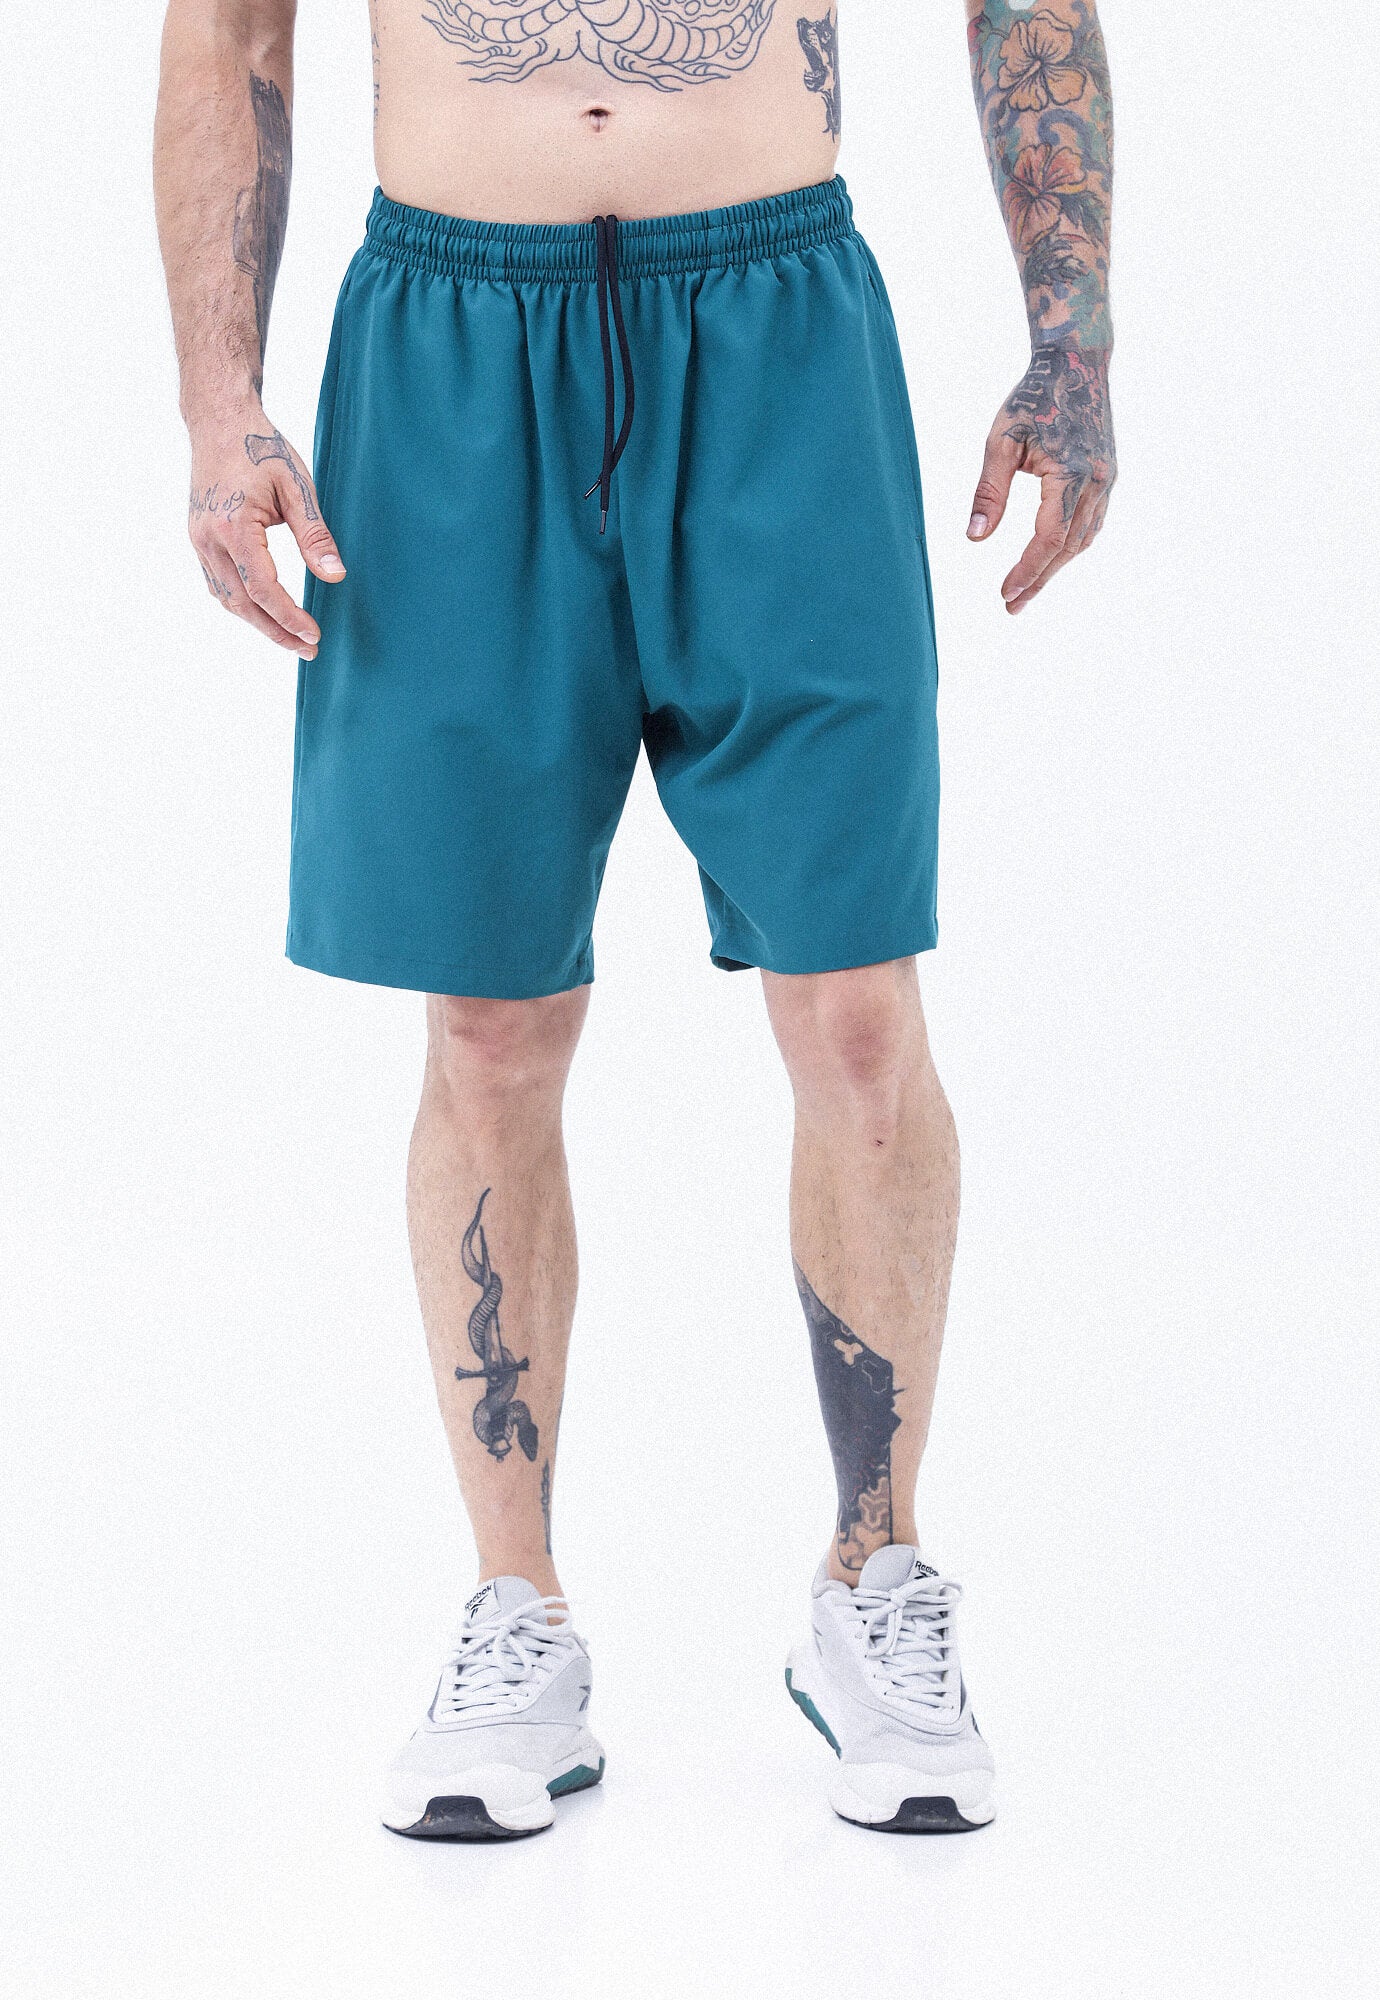 Pantaloneta deportiva verde esmeralda, cintura con elastico y cordon ajustable, bolsillos funcionales y ciclista interno para hombre.